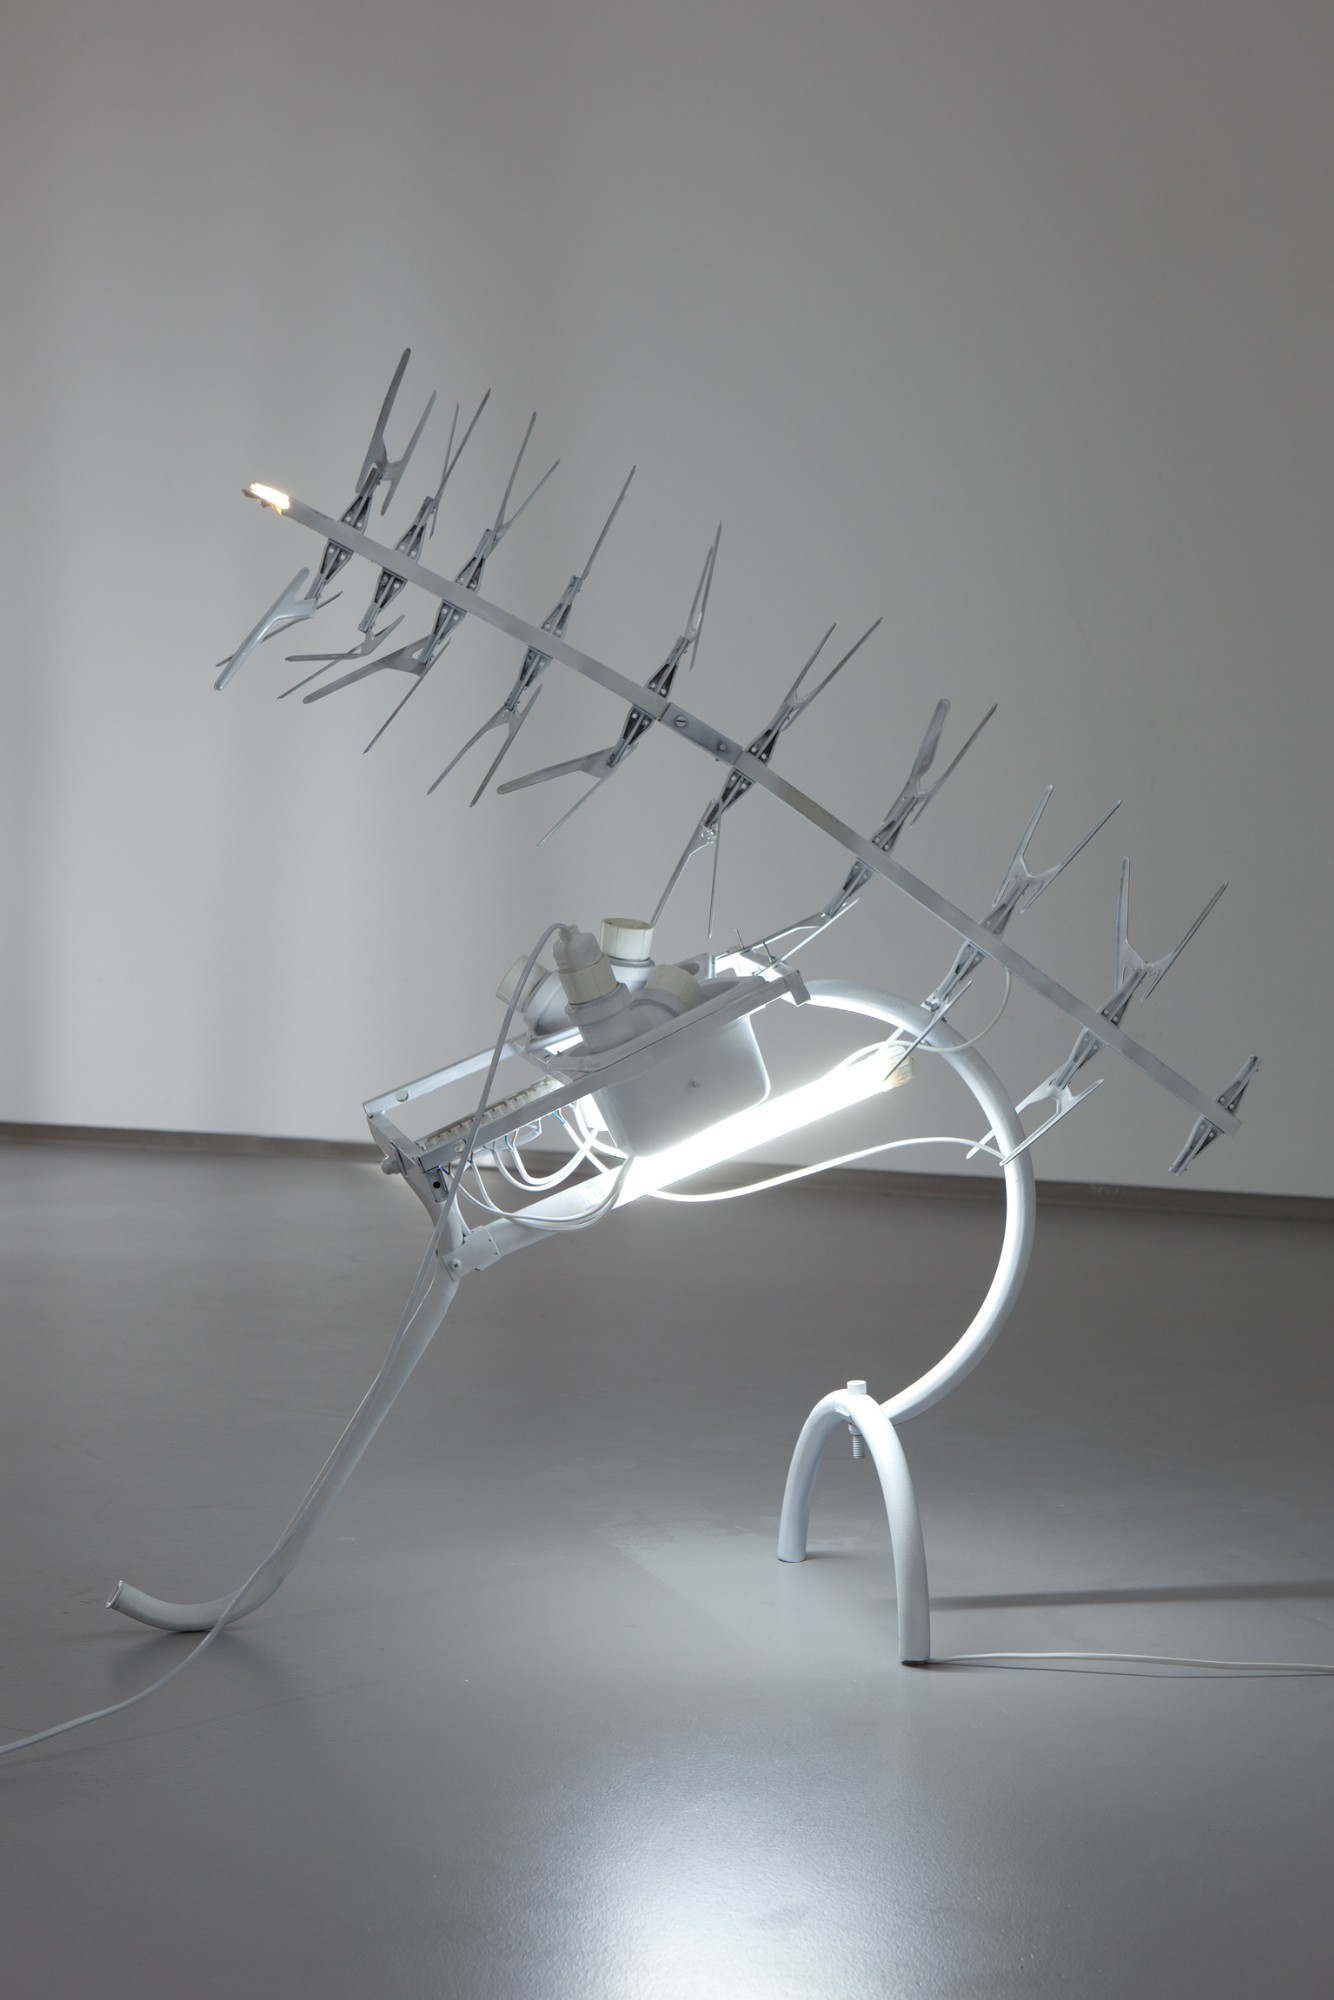 Madeleine Boschan, Kupplungsschrein, Sciurus (Elektromanile) 2011, antenna, glow lamp, plastic, lacquer, metal, neon, thermometer, 106 x 100 x 40 cm